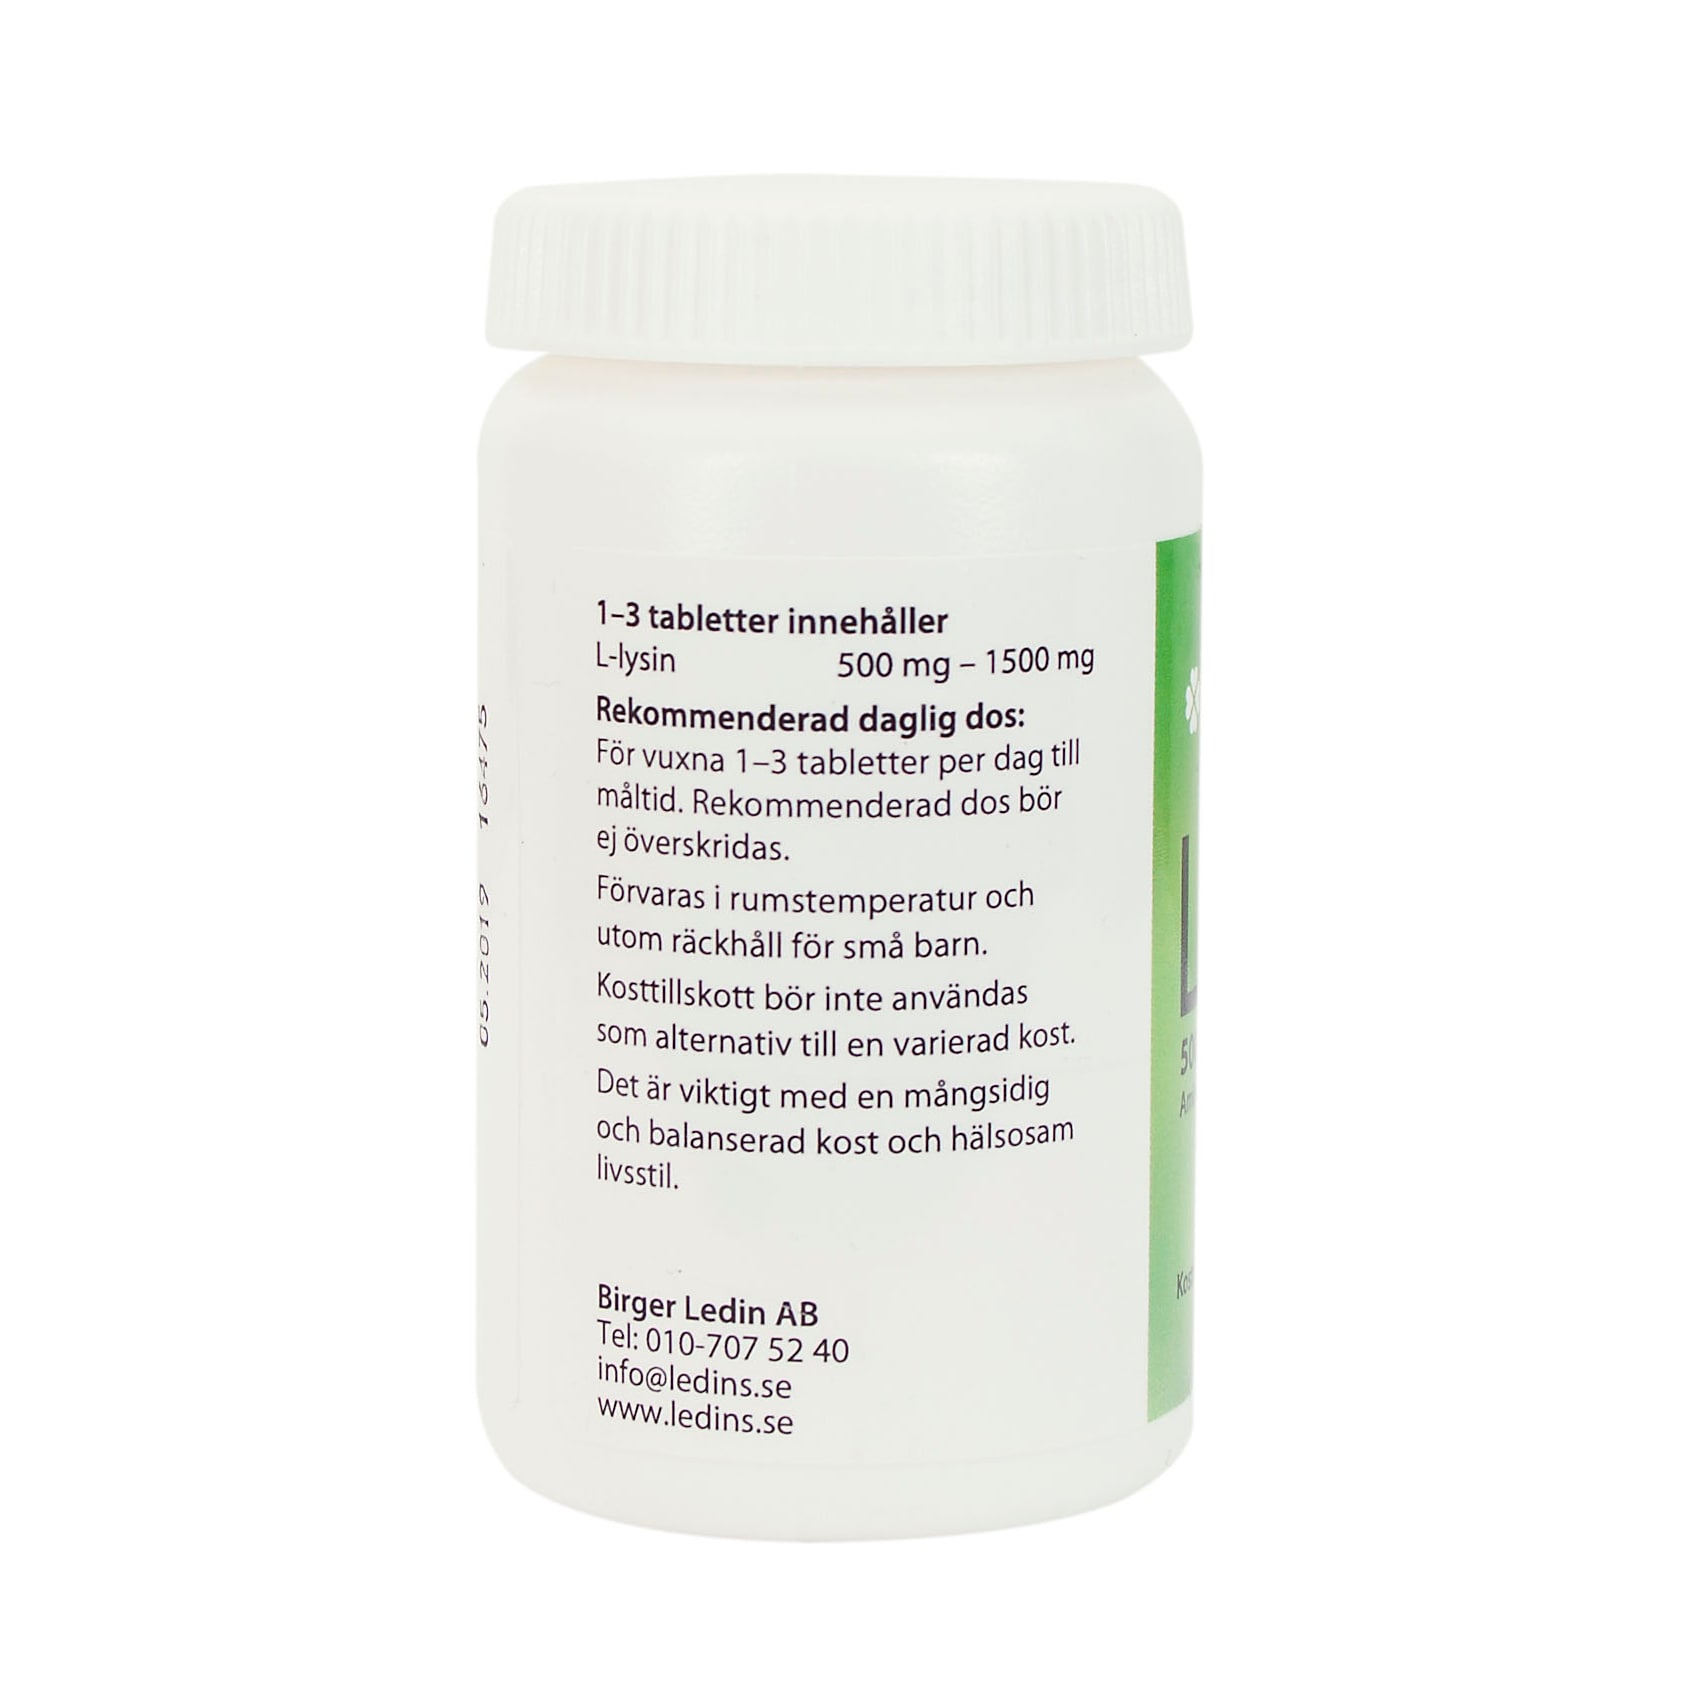 L-Lysin 60 tabletter